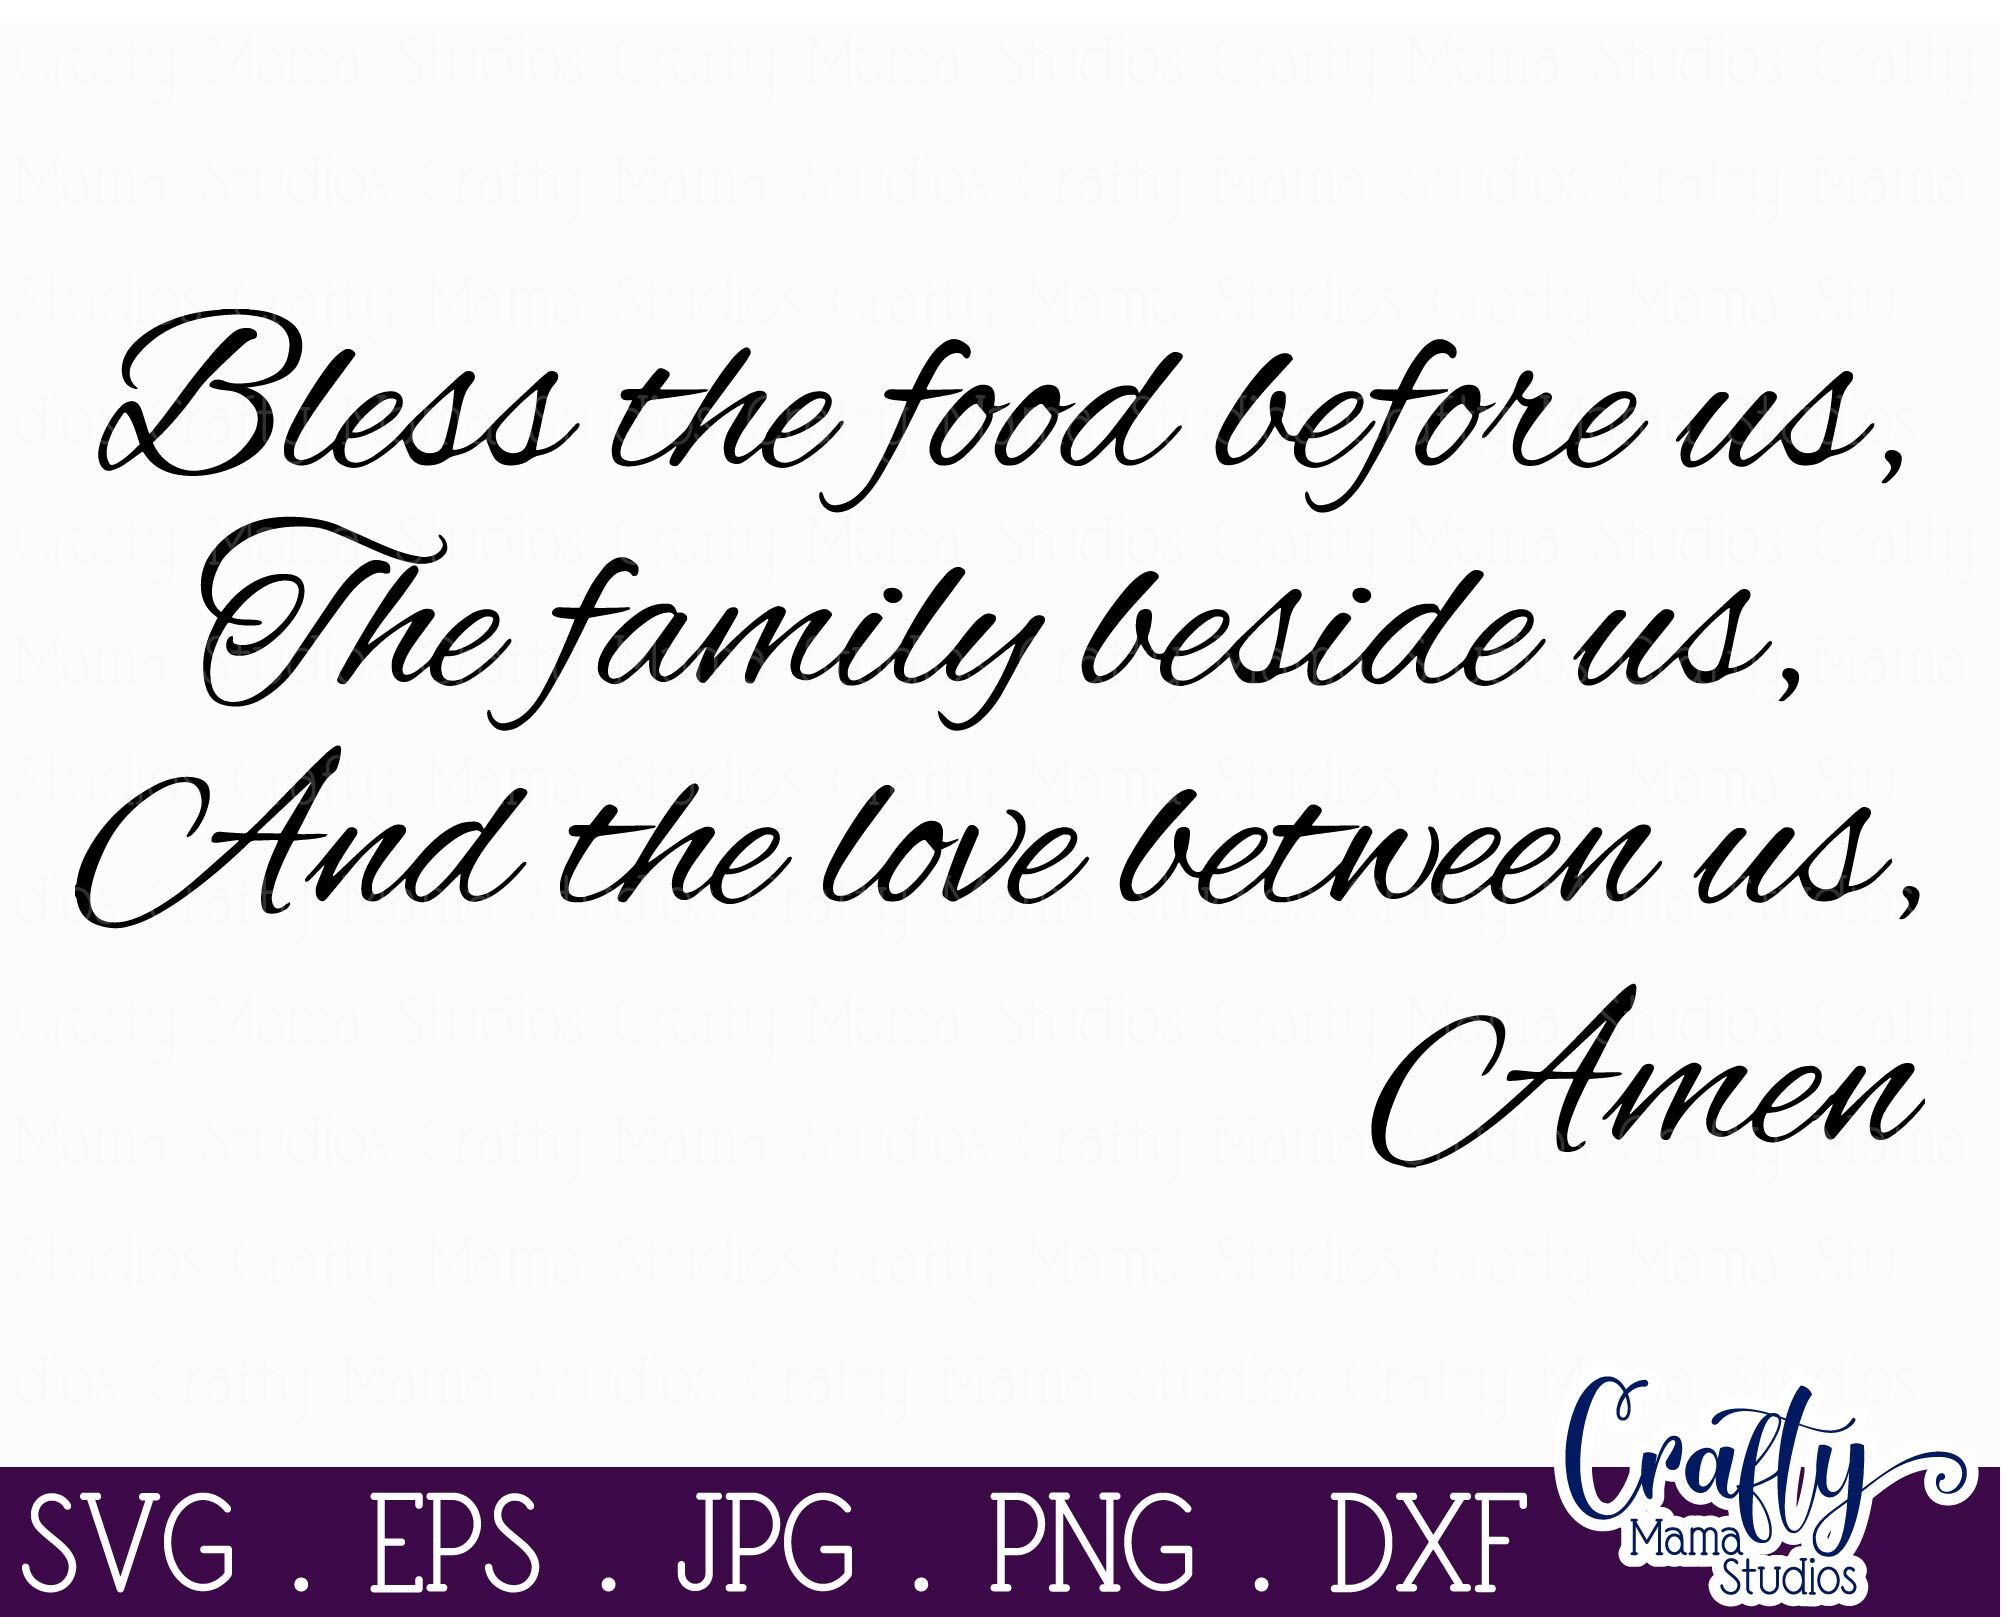 bless-the-food-before-us-christian-svg-dinner-prayer-family-svg